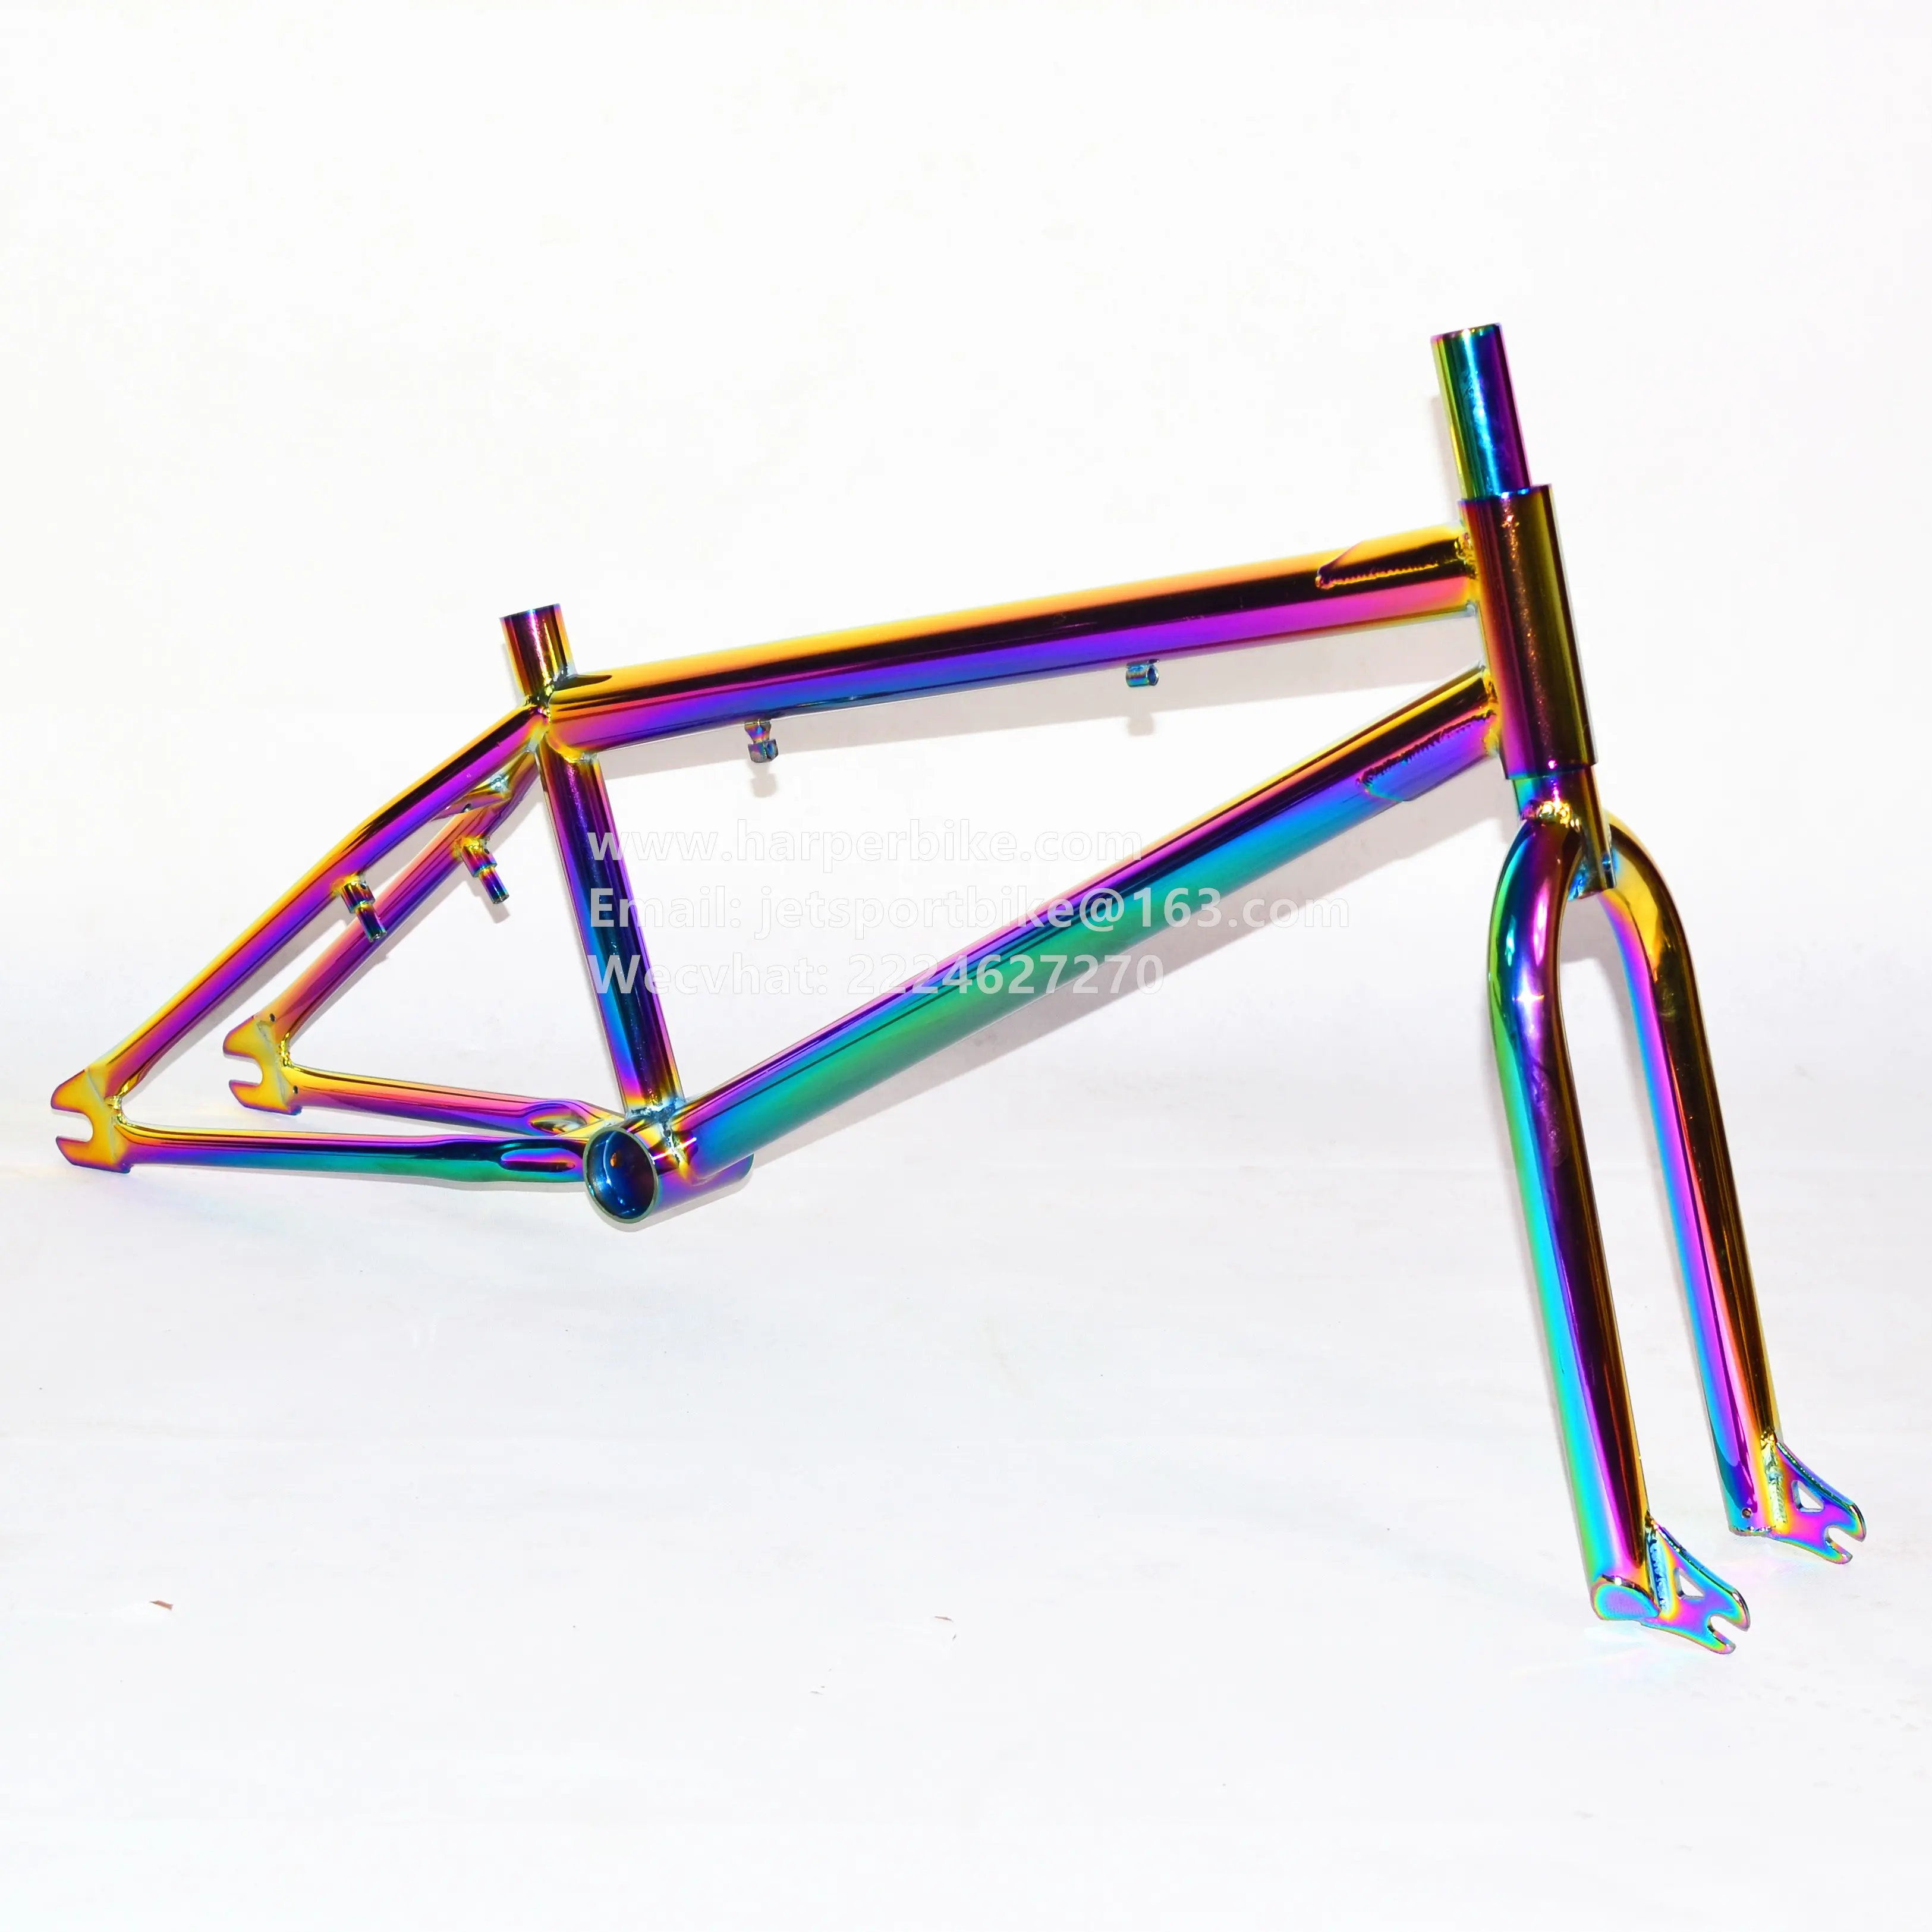 20 "full cromoly bmx fahrrad rahmen/gabel set öl slick bunte regenbogen jet kraftstoff farbe